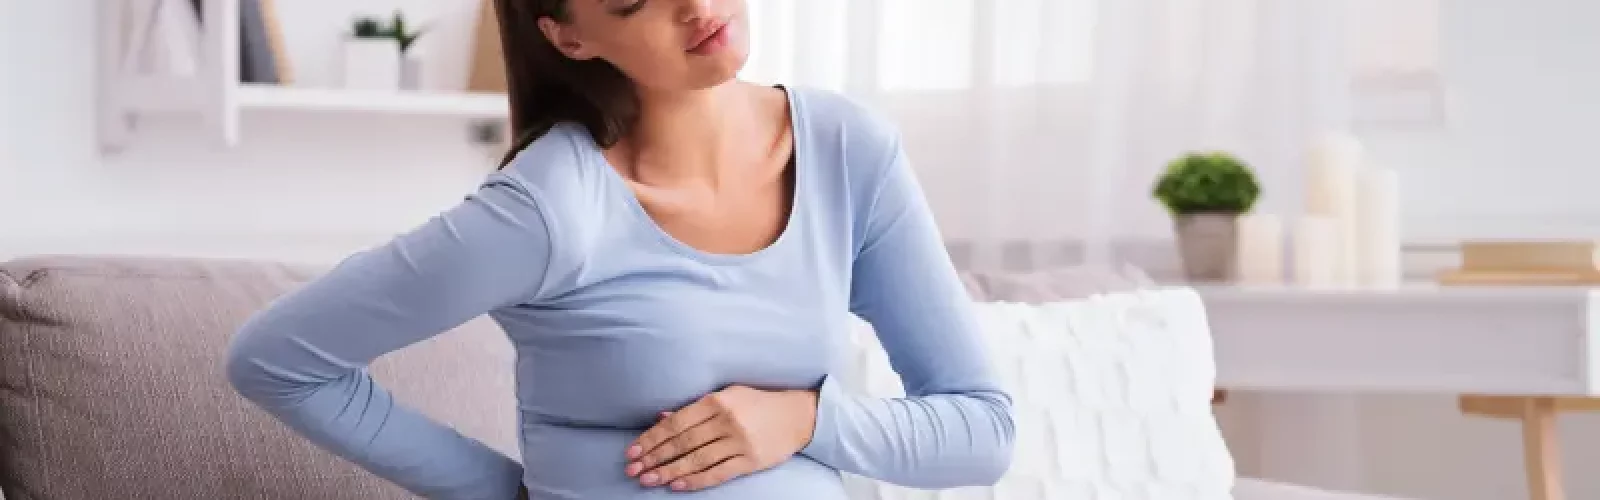 mujer con dolor de espalda durante el embarazo IAC